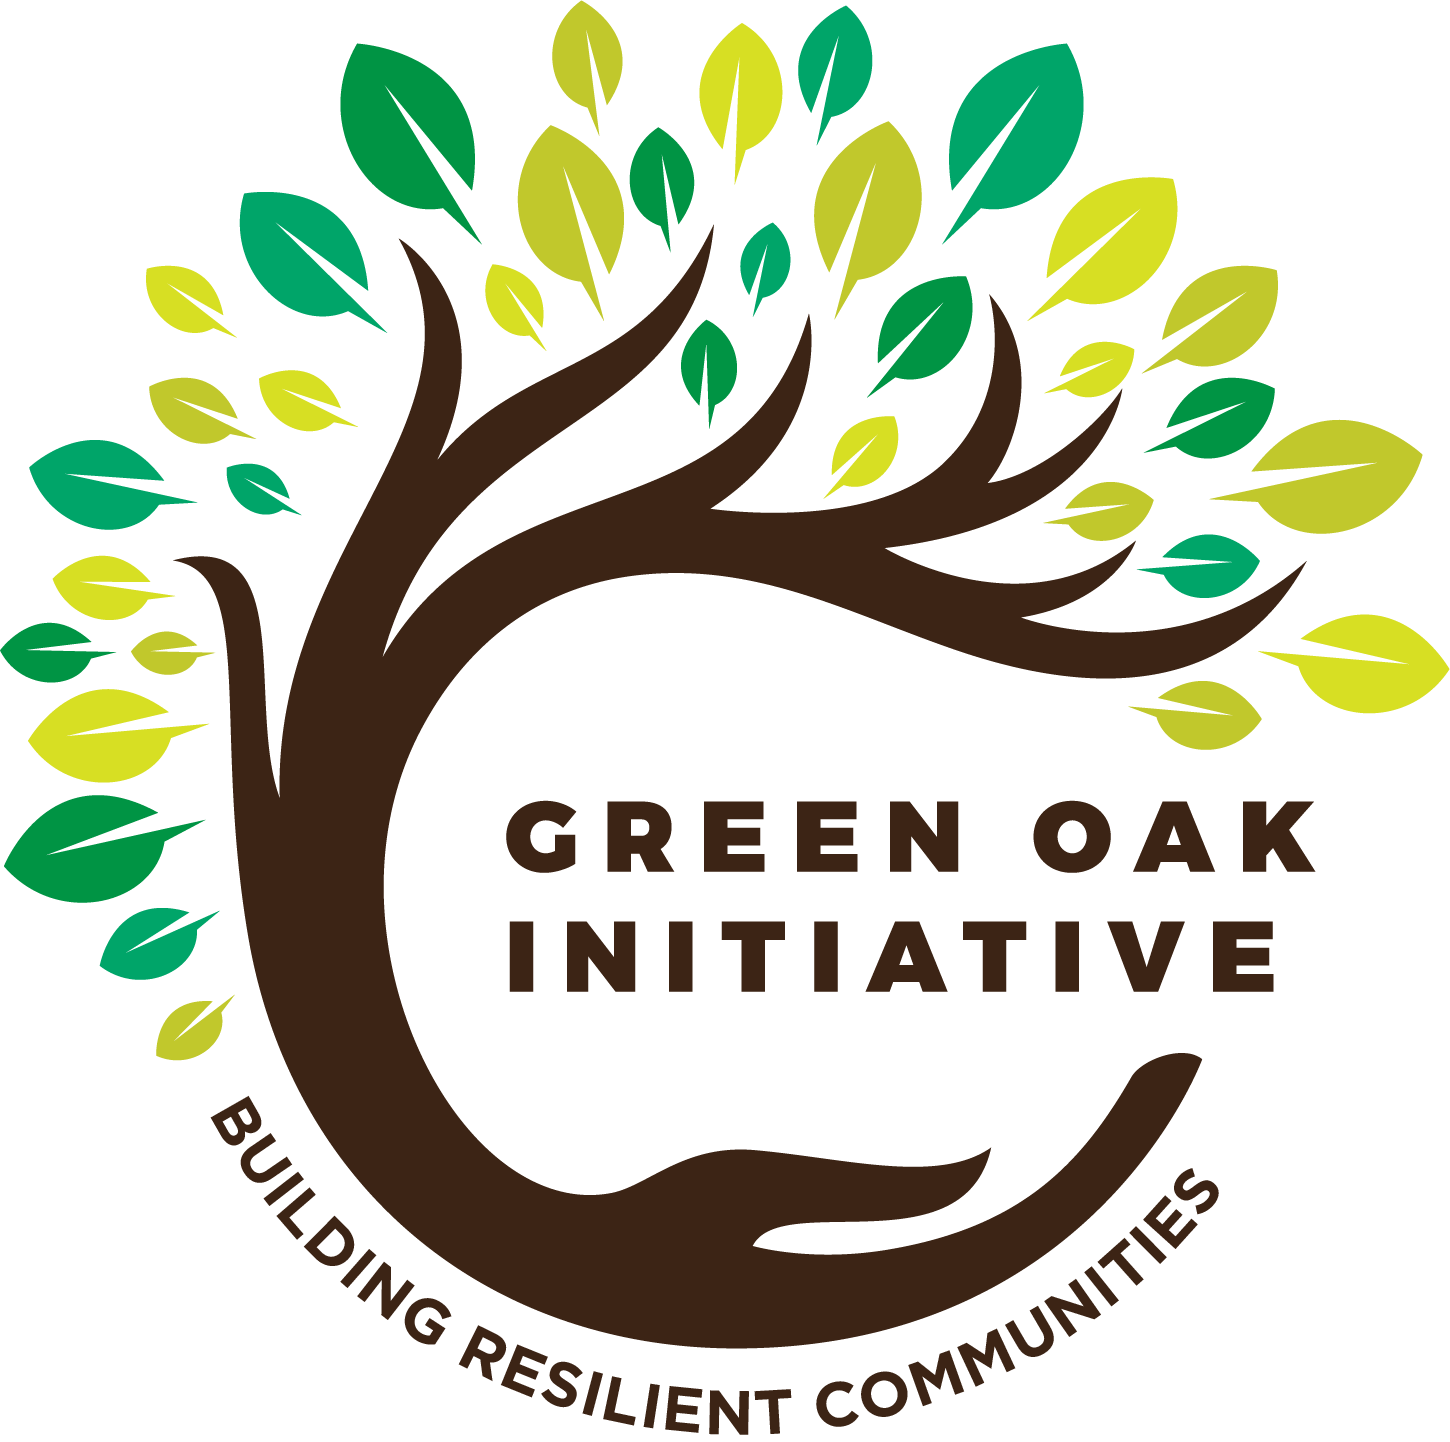 The Green Oak Initiative